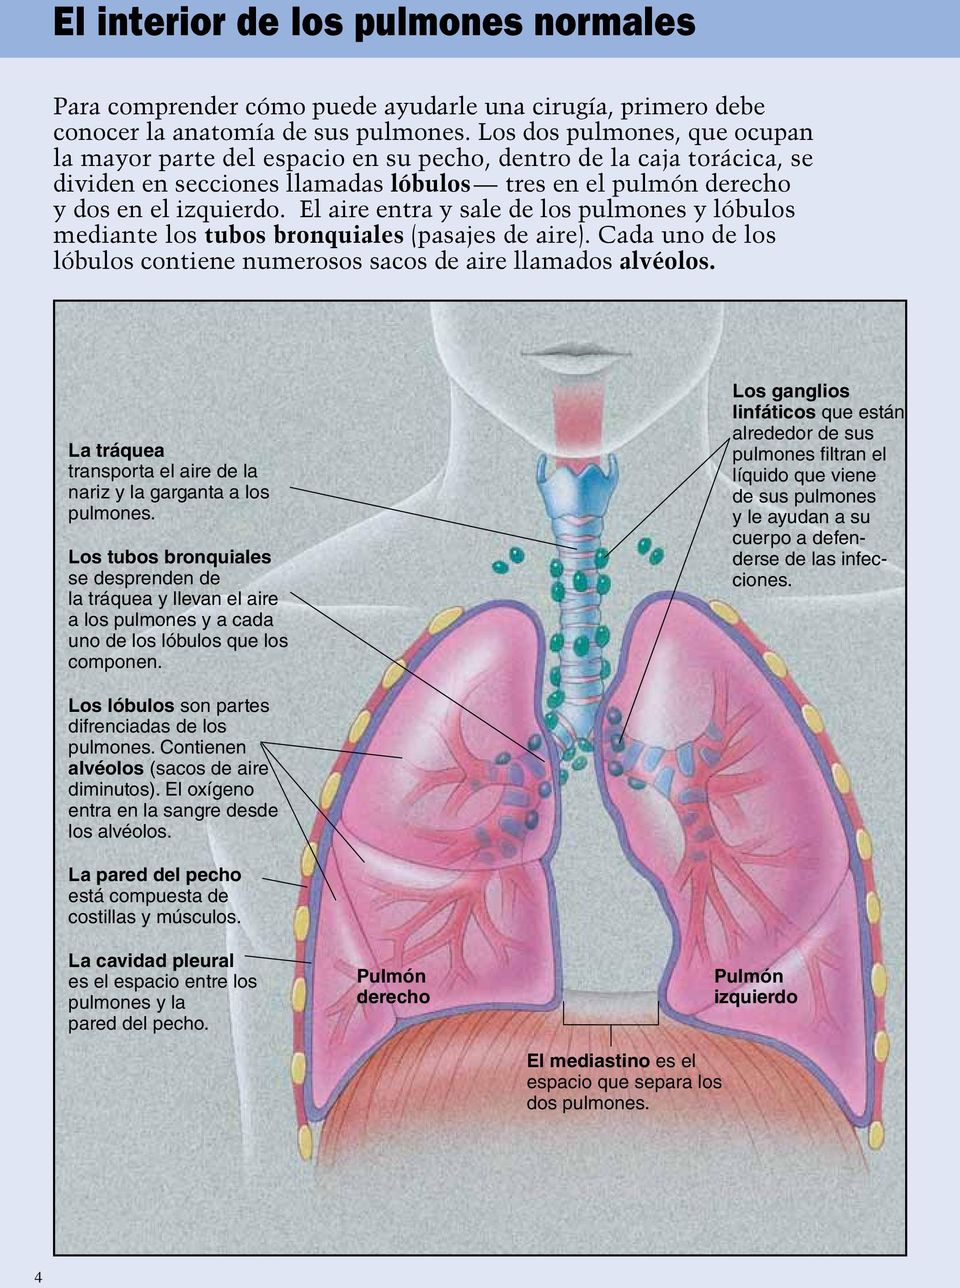 El aire entra y sale de los pulmones y lóbulos mediante los tubos bronquiales (pasajes de aire). Cada uno de los lóbulos contiene numerosos sacos de aire llamados alvéolos.